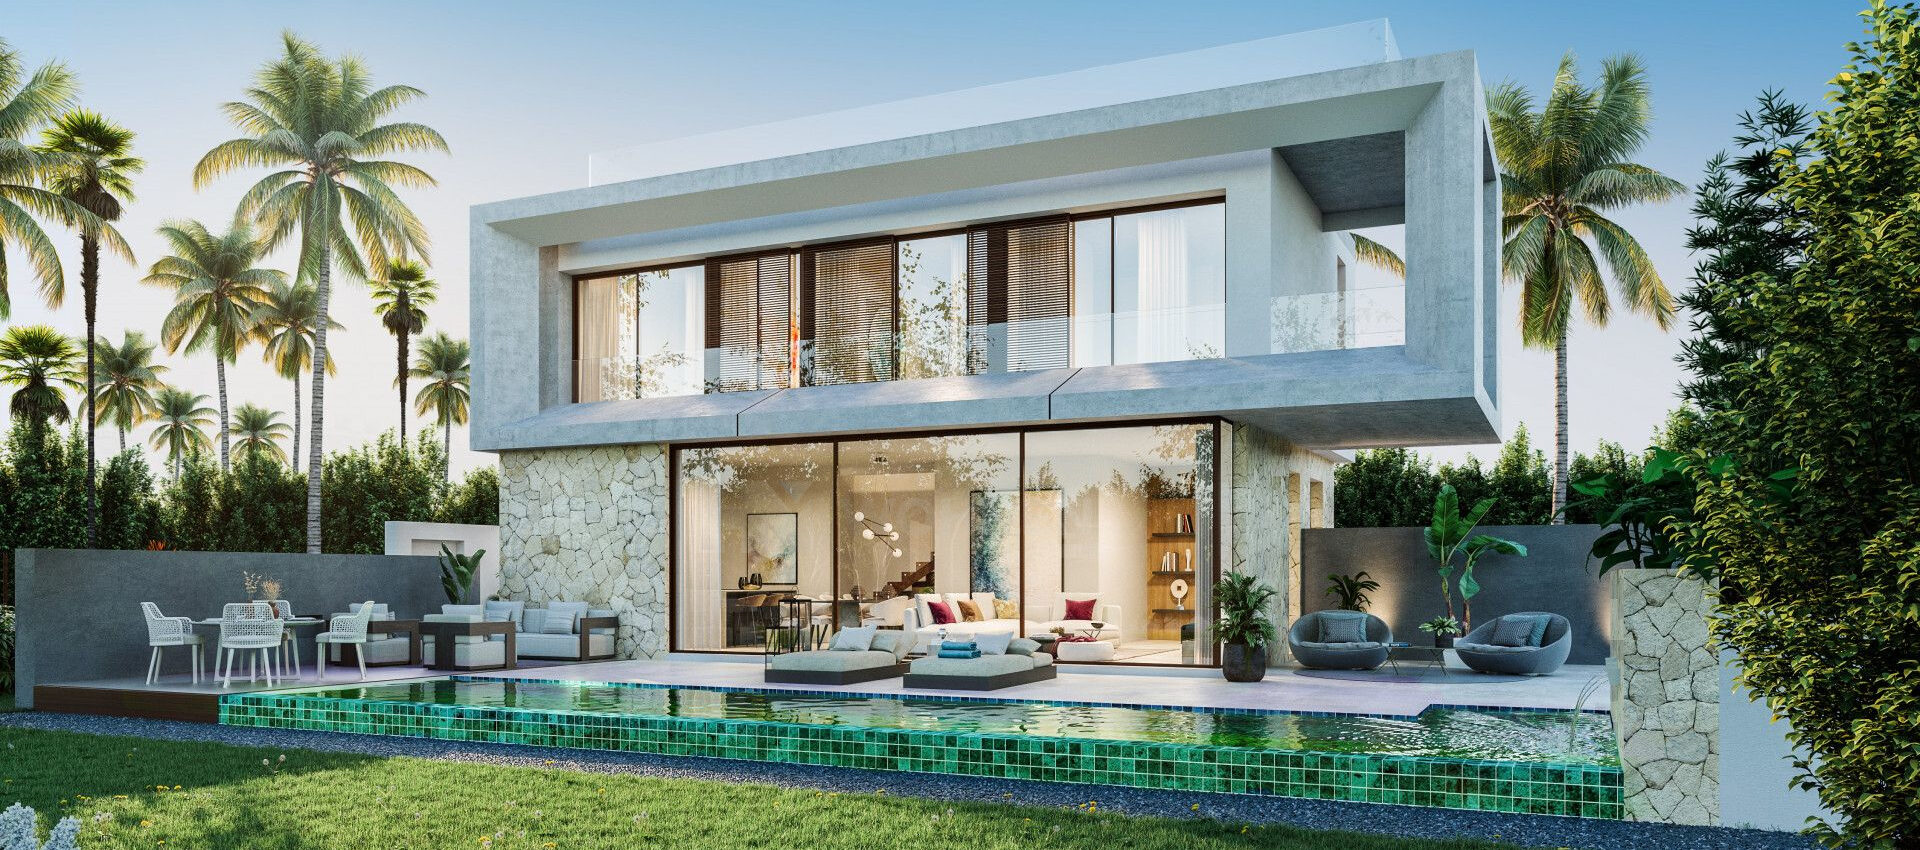 Fabuloso proyecto de villa de lujo en una de las zonas residenciales más prestigiosas de Marbella